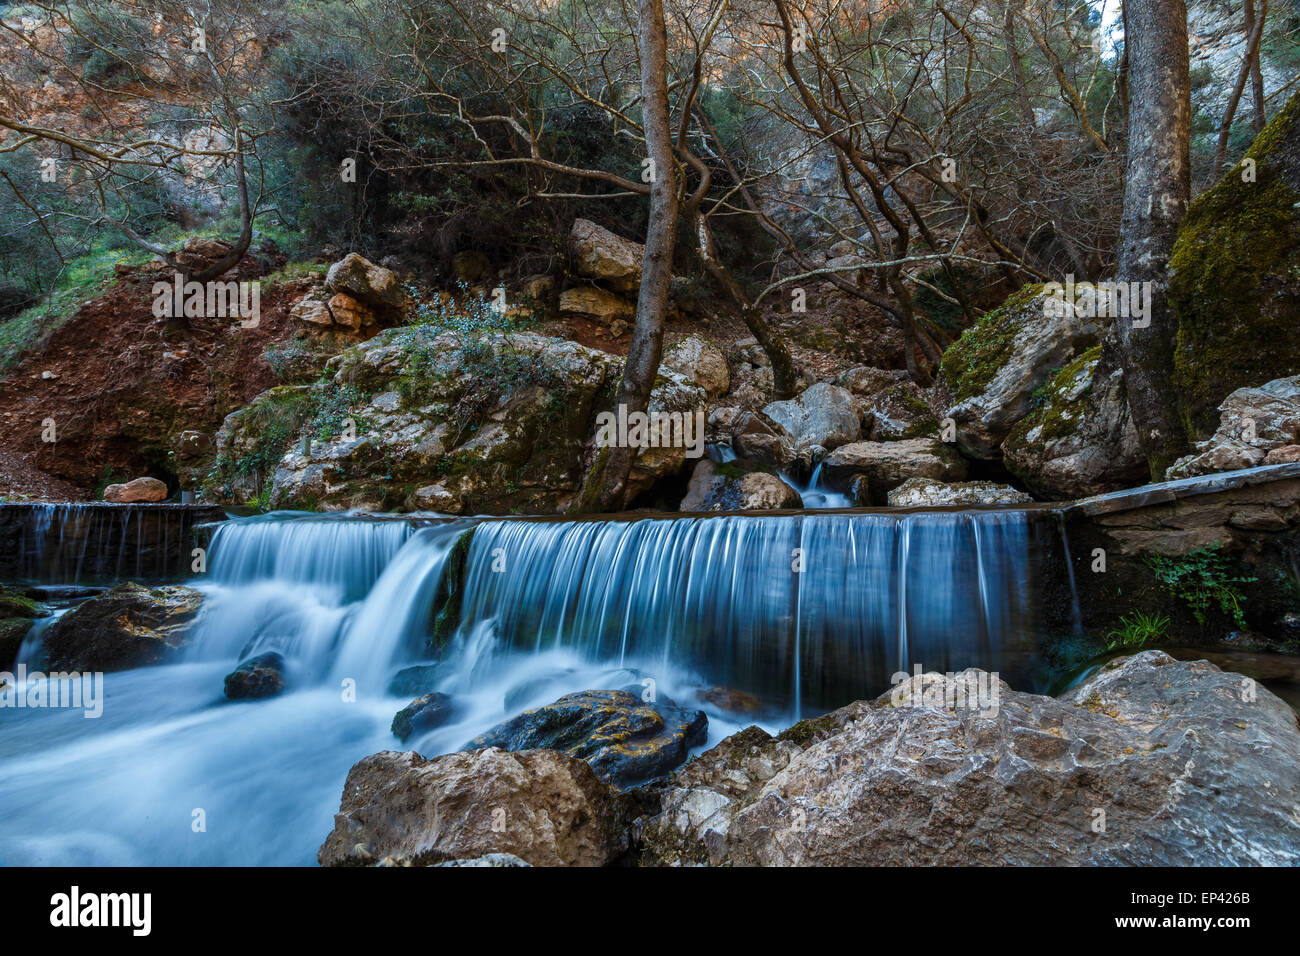 Cascade naturelle au fond de forêt en Grèce, long exposure photography Banque D'Images